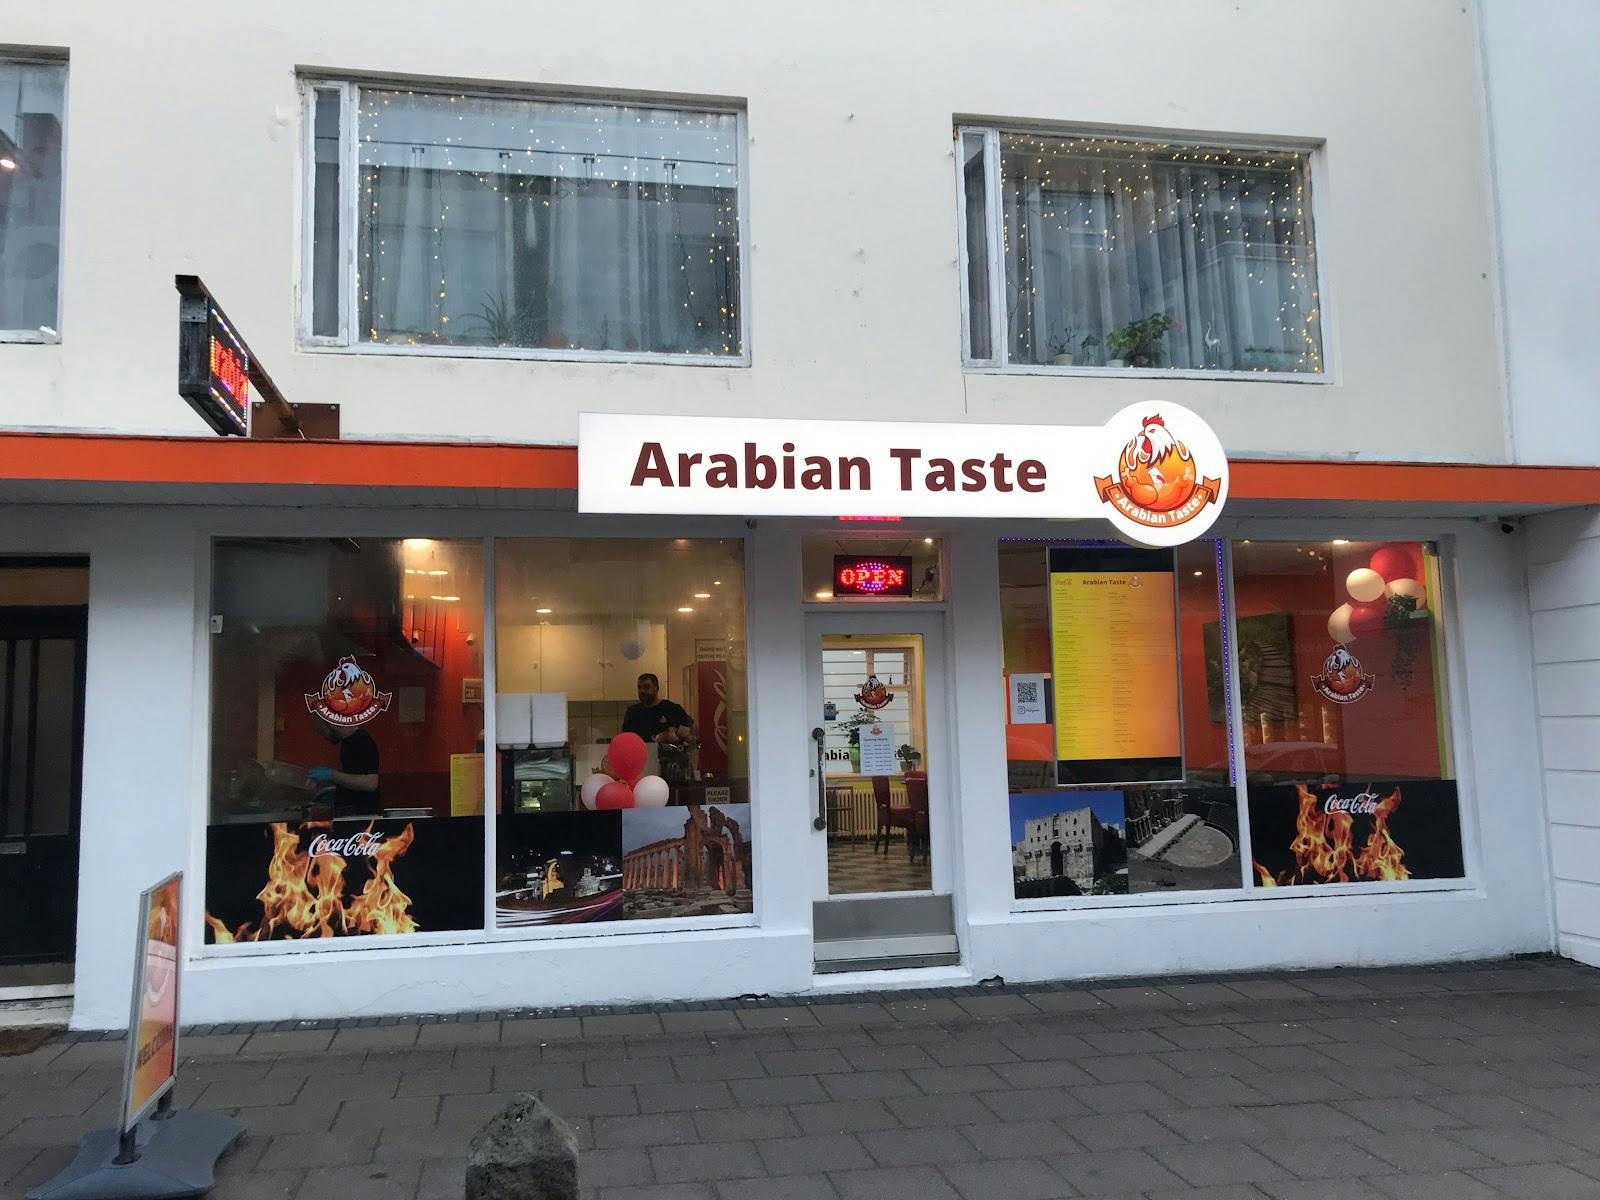 Image - Arabian Taste